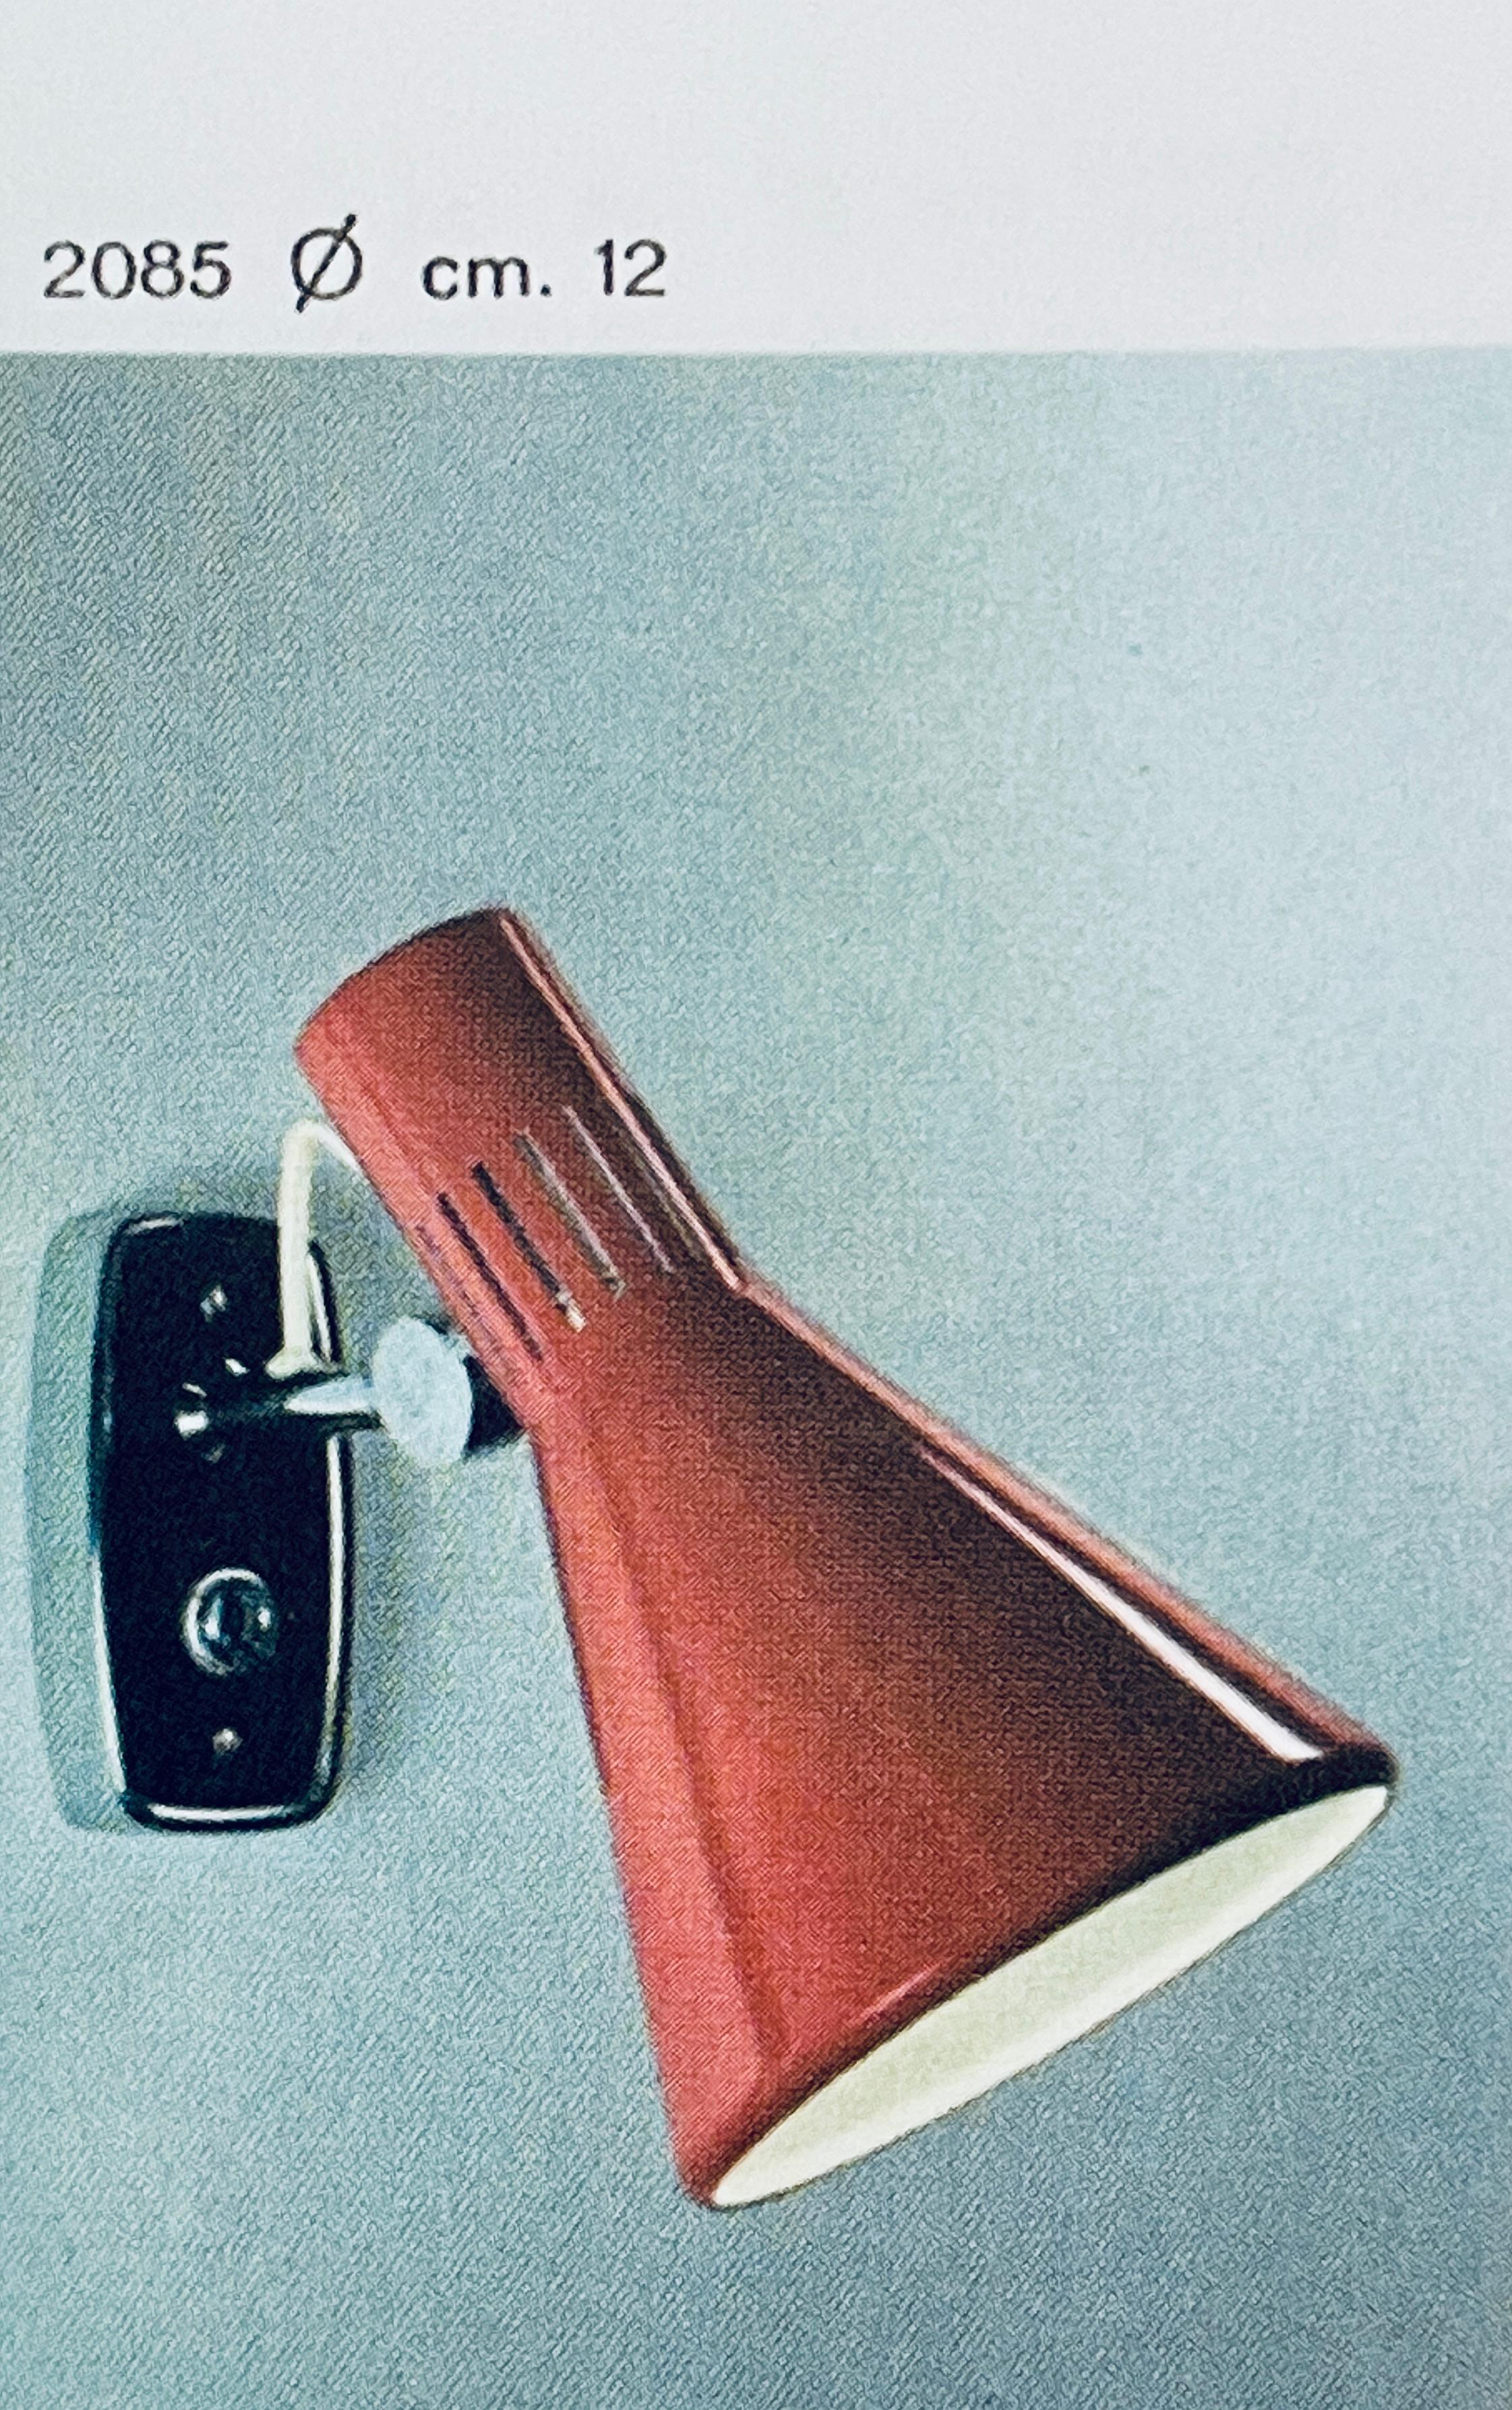 1960er Stilnovo Modell #2085 Gelenkleuchte mit gelbem Label.
Ein typisch italienisches Design der 1960er Jahre aus rot lackiertem Metall mit modifizierter Rückwand zur Montage über einer amerikanischen Standard-J-Box. Der Schirm kann durch ein